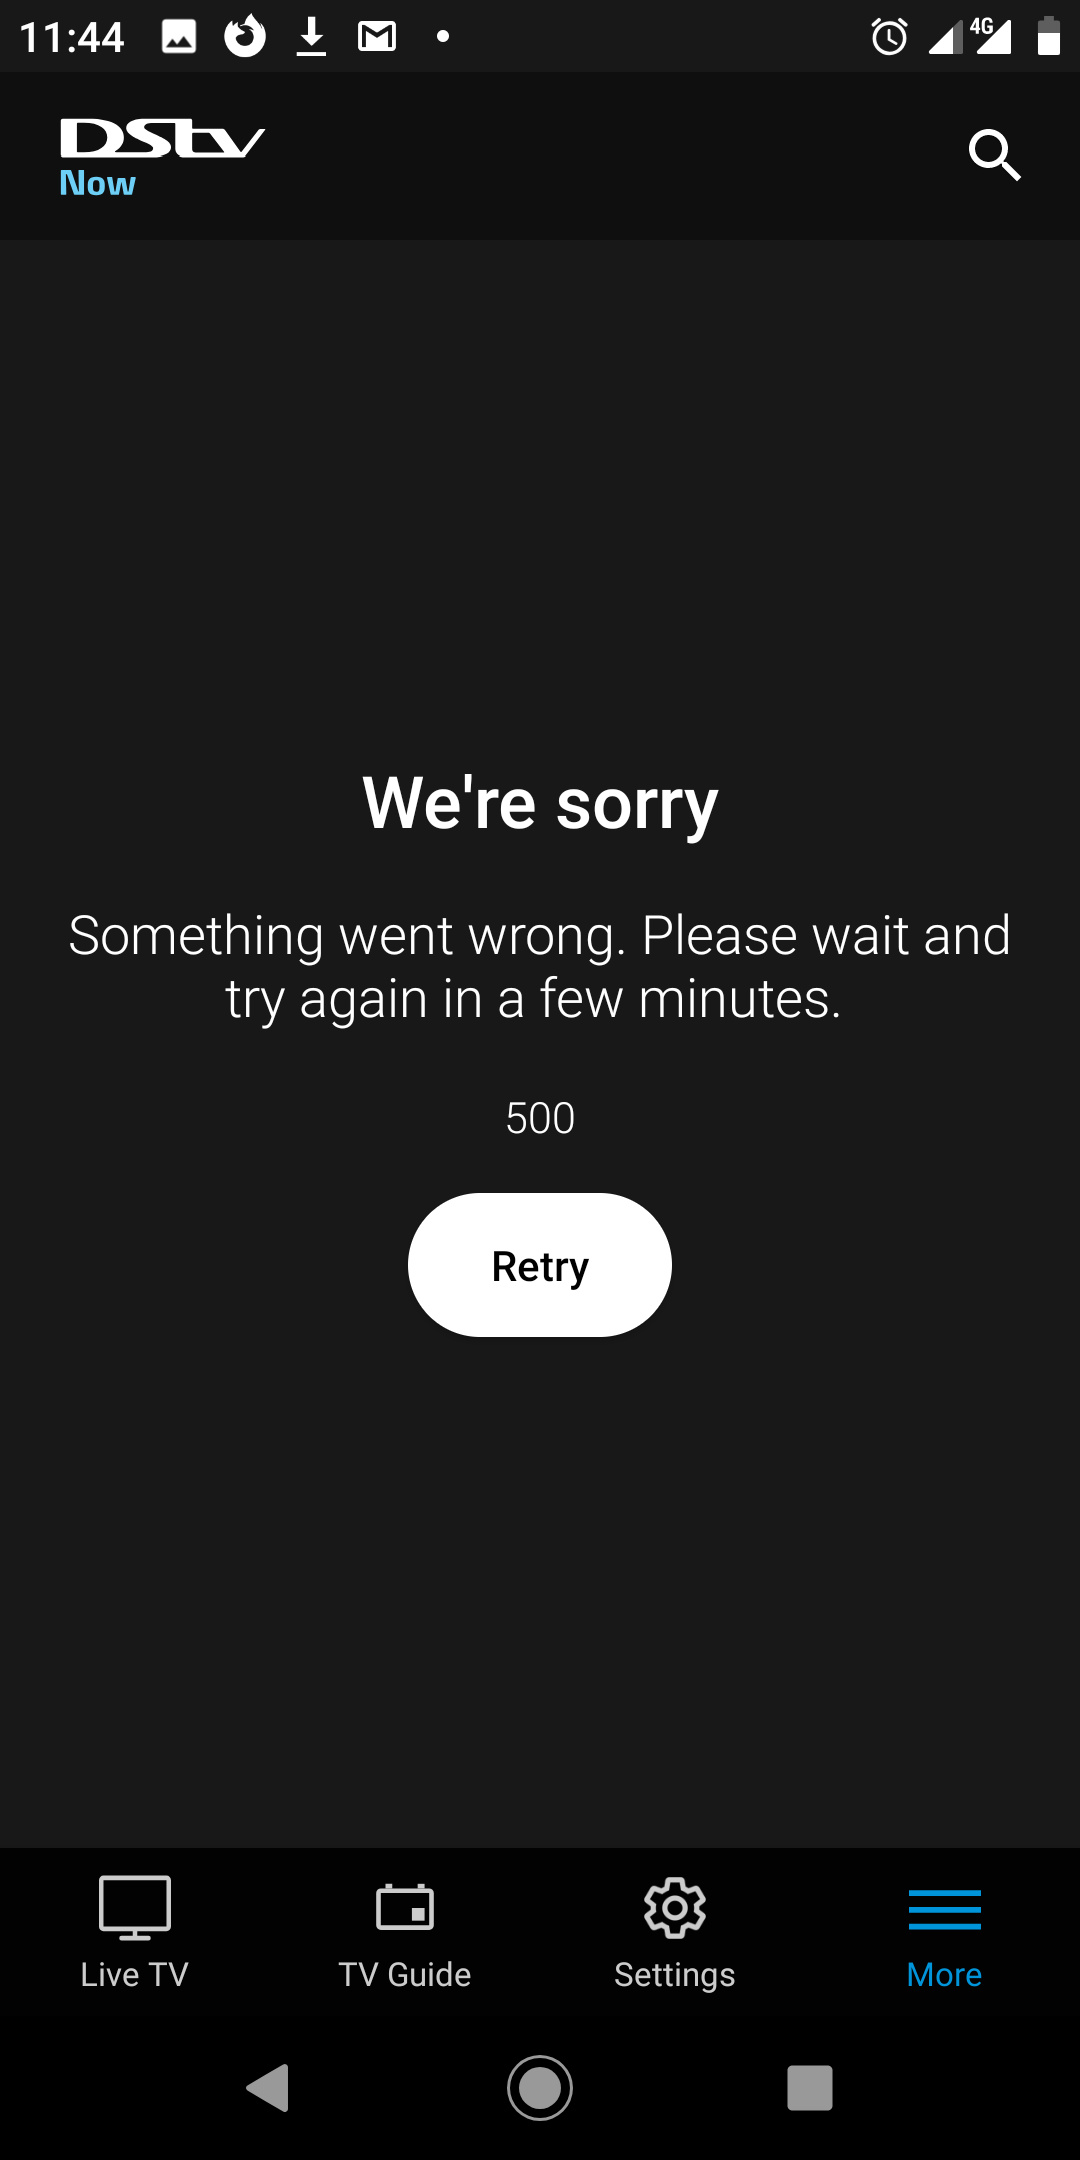 DSTV Now App not working